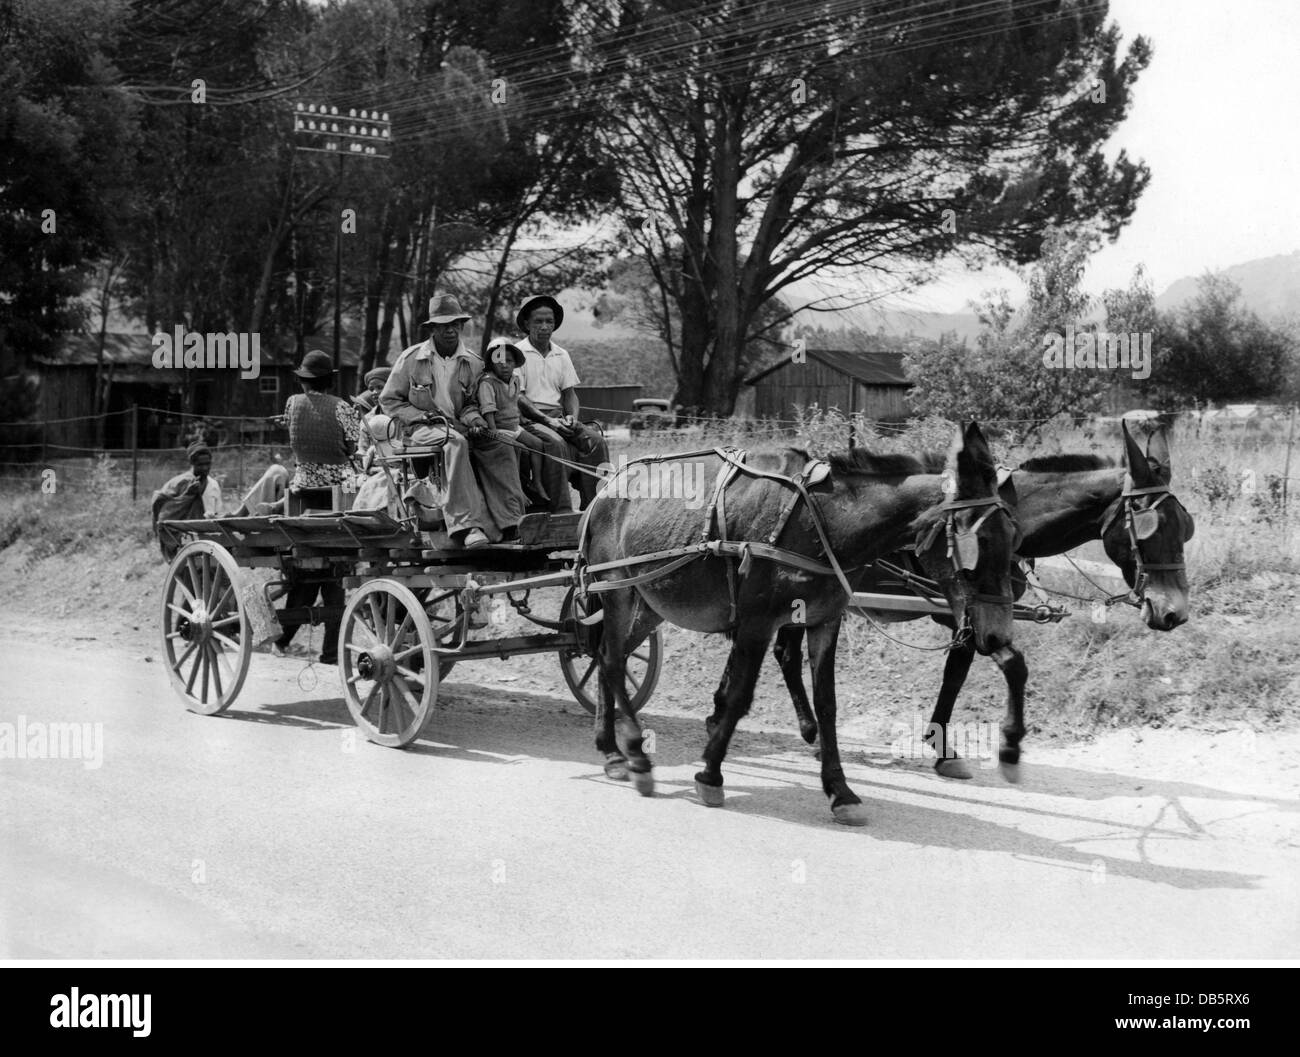 Geografía / viajes, Sudáfrica, gente, familia nativa del país que se traslada a la ciudad, alrededor de 1950, Derechos adicionales-Clearences-no disponible Foto de stock